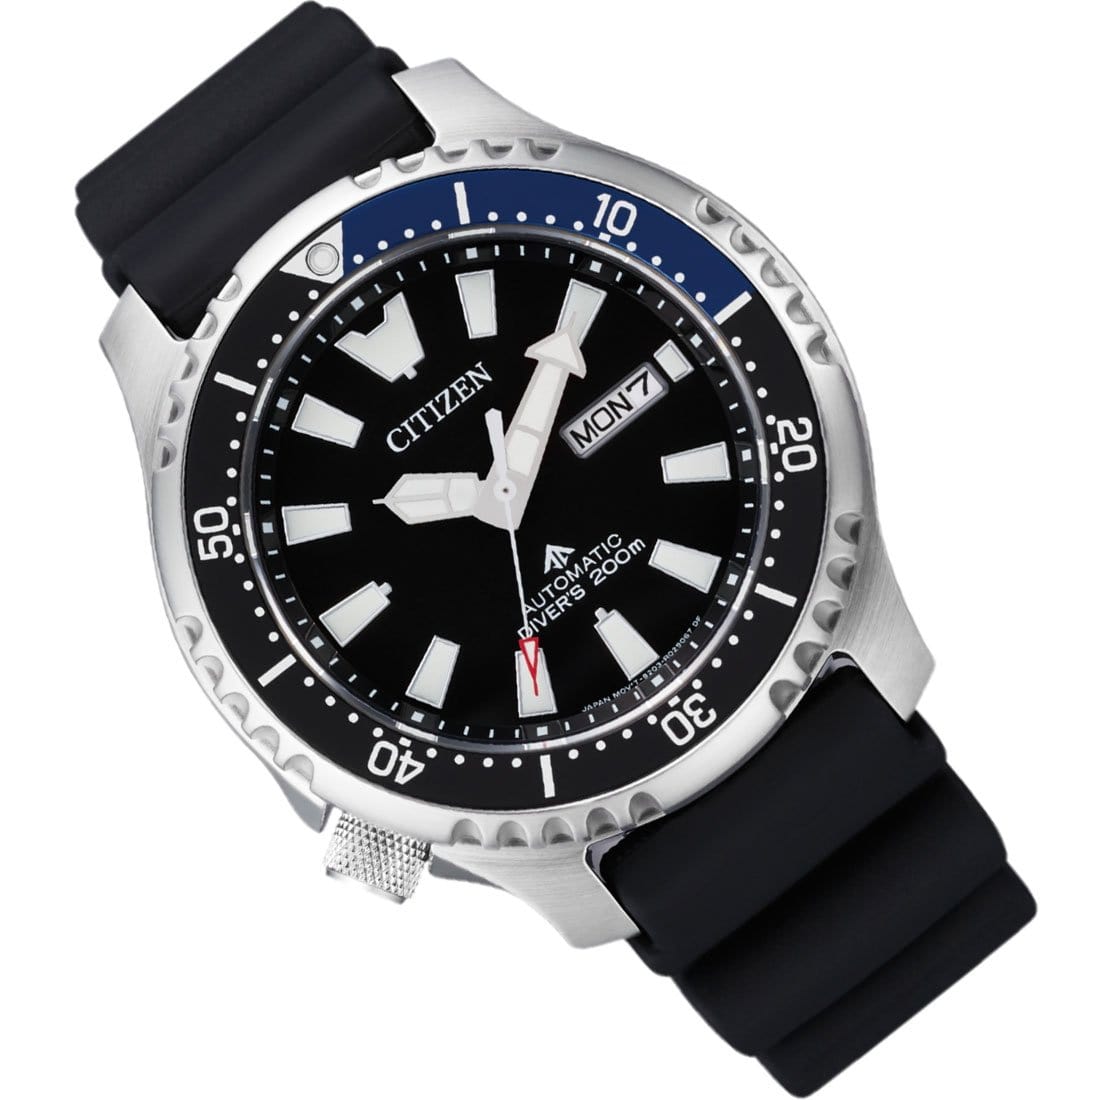 Citizen Promaster Fugu Automatic Black Dial Male 200m Watch NY0111-11E